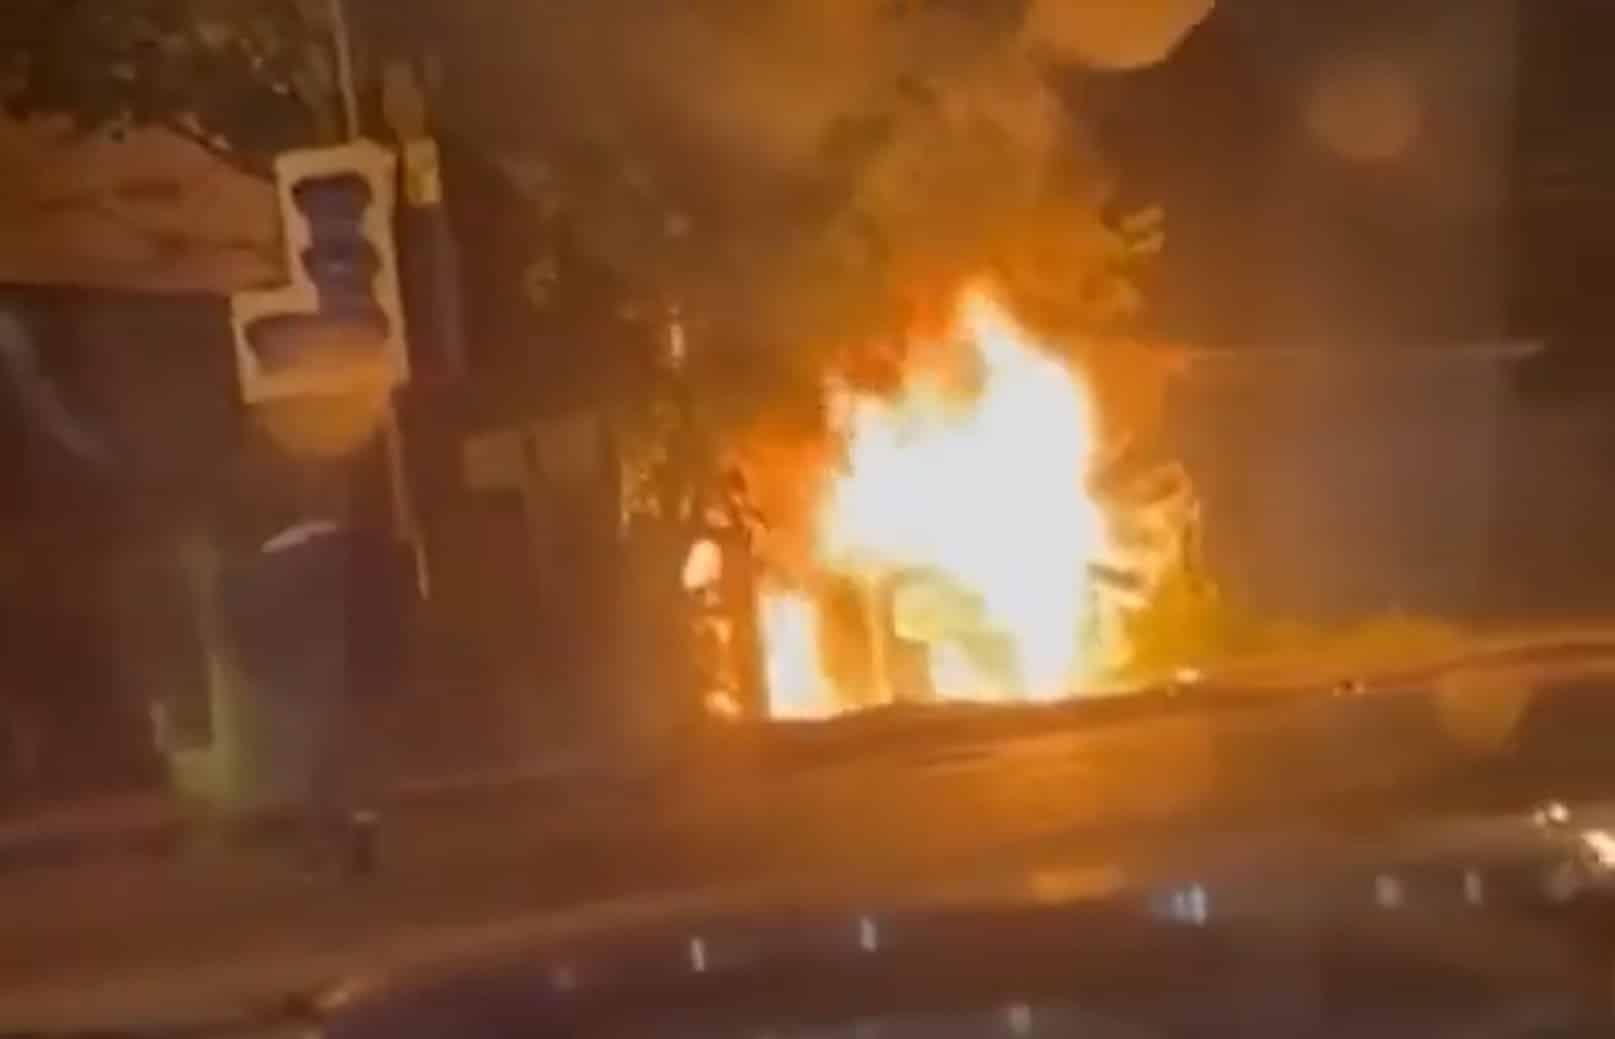 Momentos posteriores a la explosión, según vídeos compartidos en redes sociales.